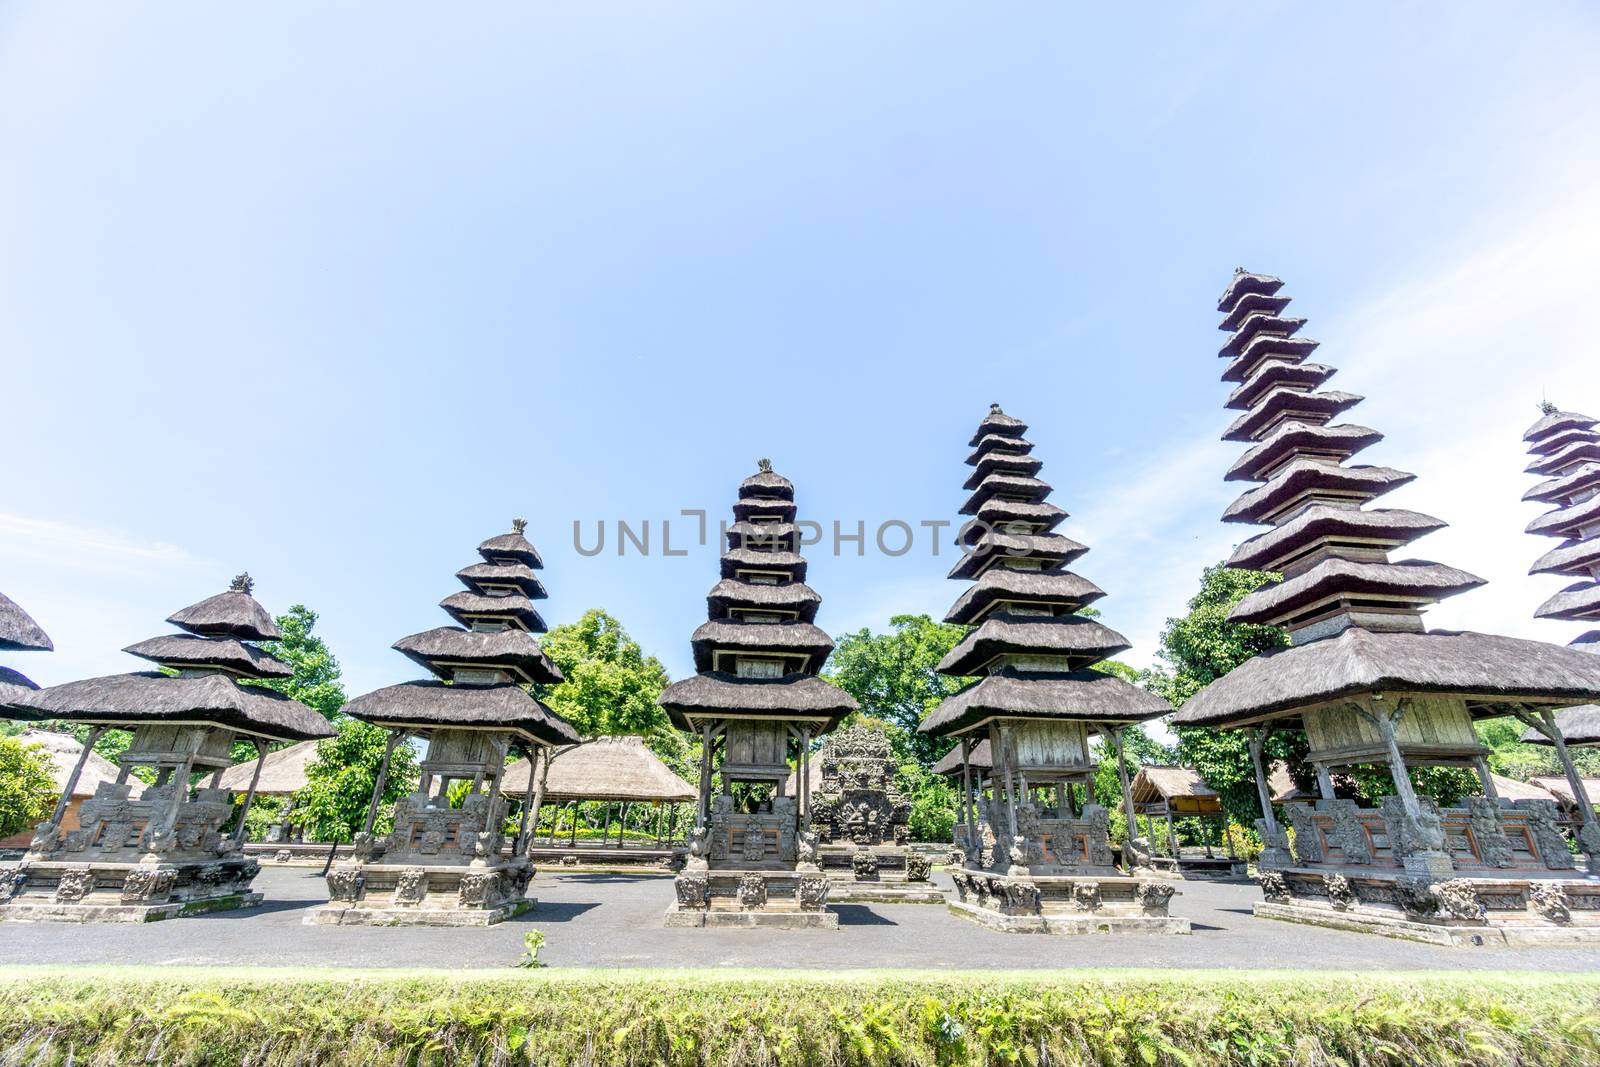 Bali, Indonesia - December 23, 2016: Pura Taman Ayun Temple in Bali, Indonesia.